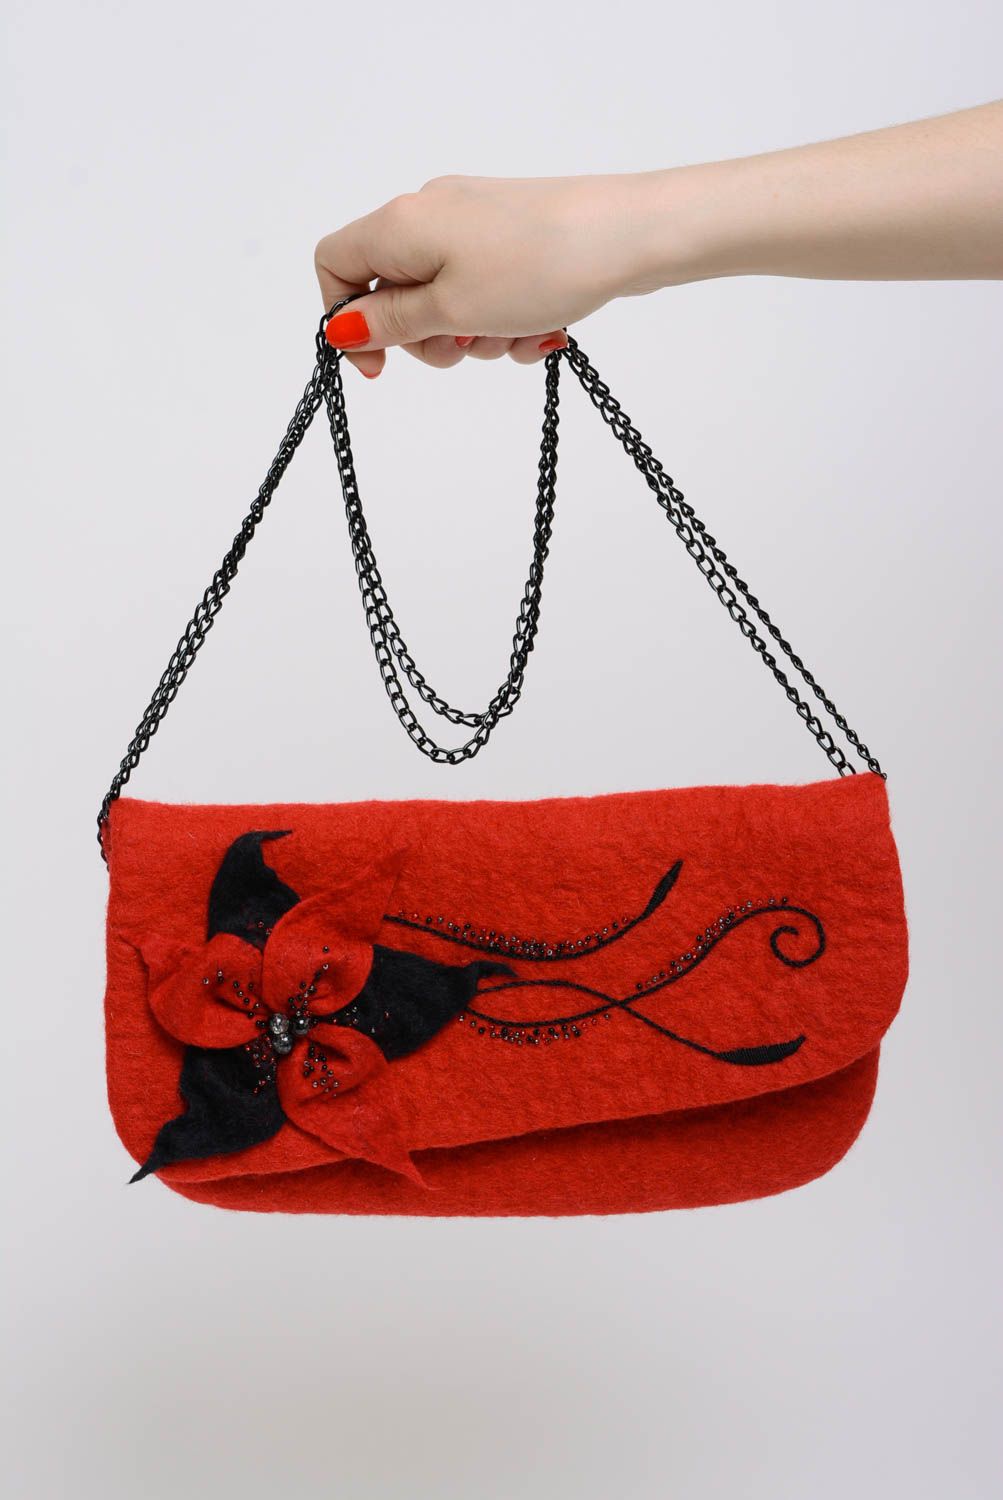 Красная сумочка в технике валяния из шерсти ручной работы авторская красивая фото 4